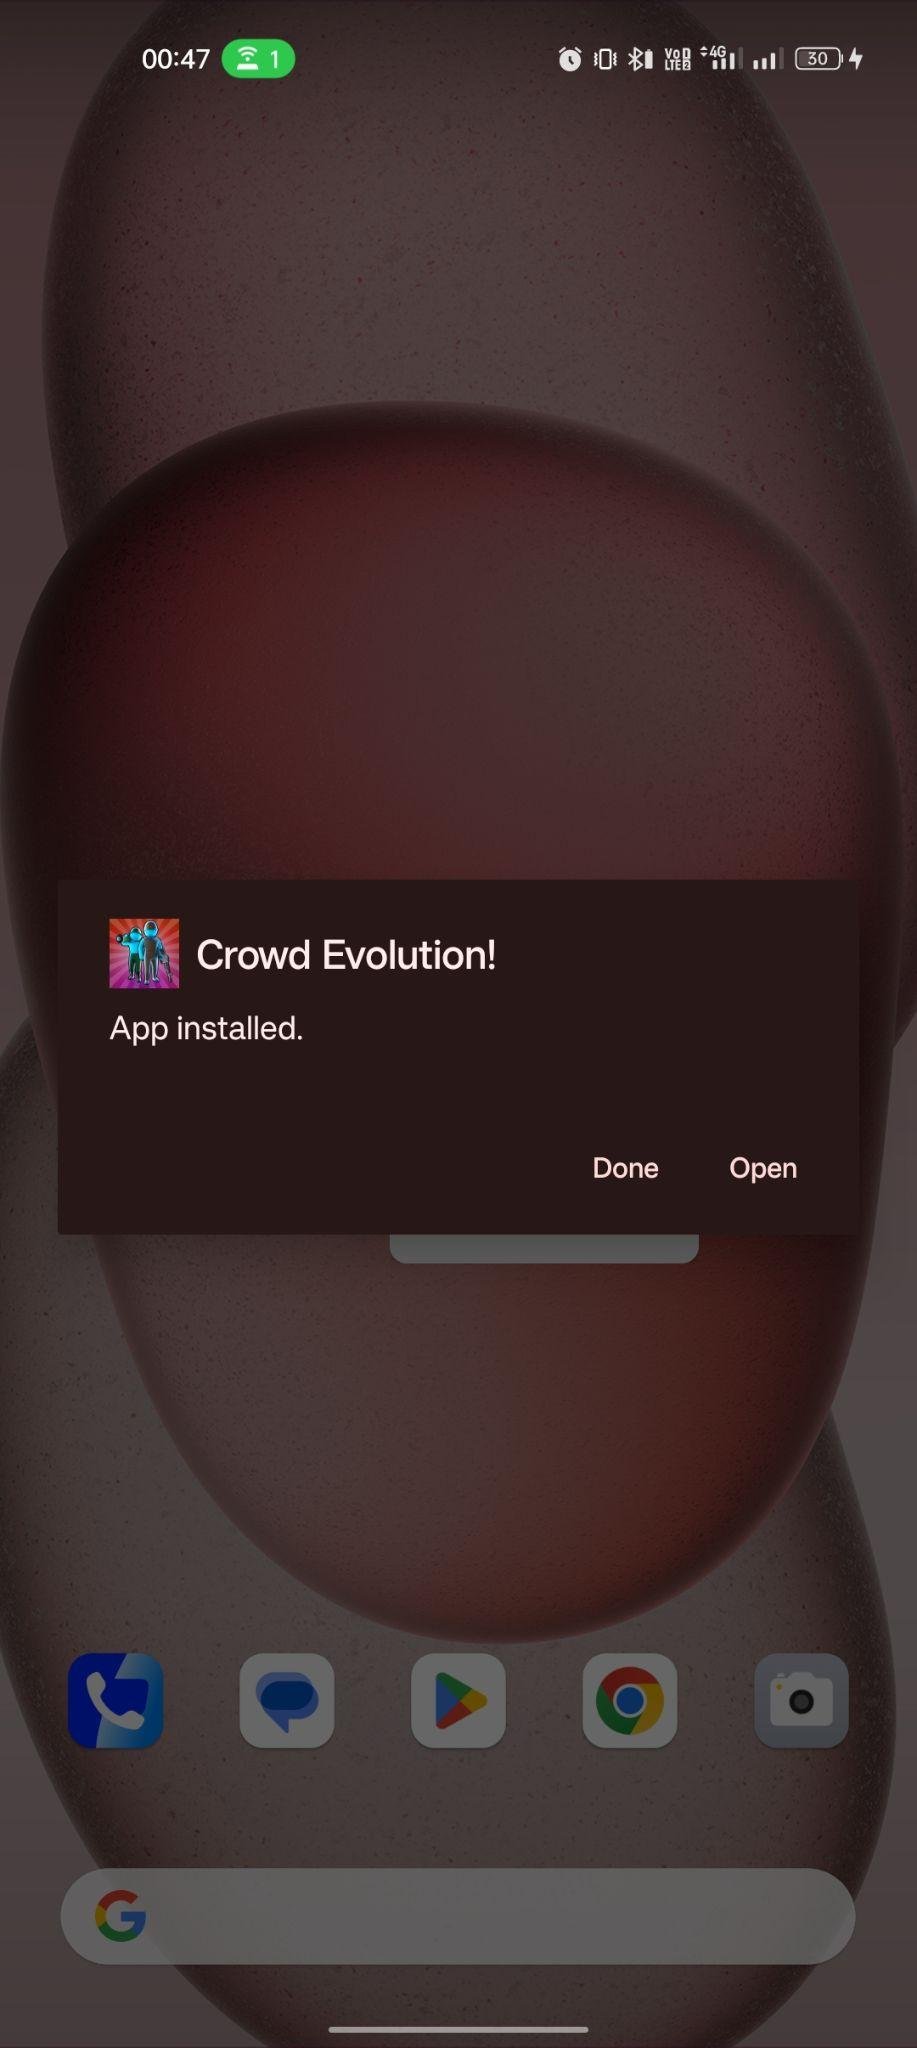 Crowd Evolution! apk installed